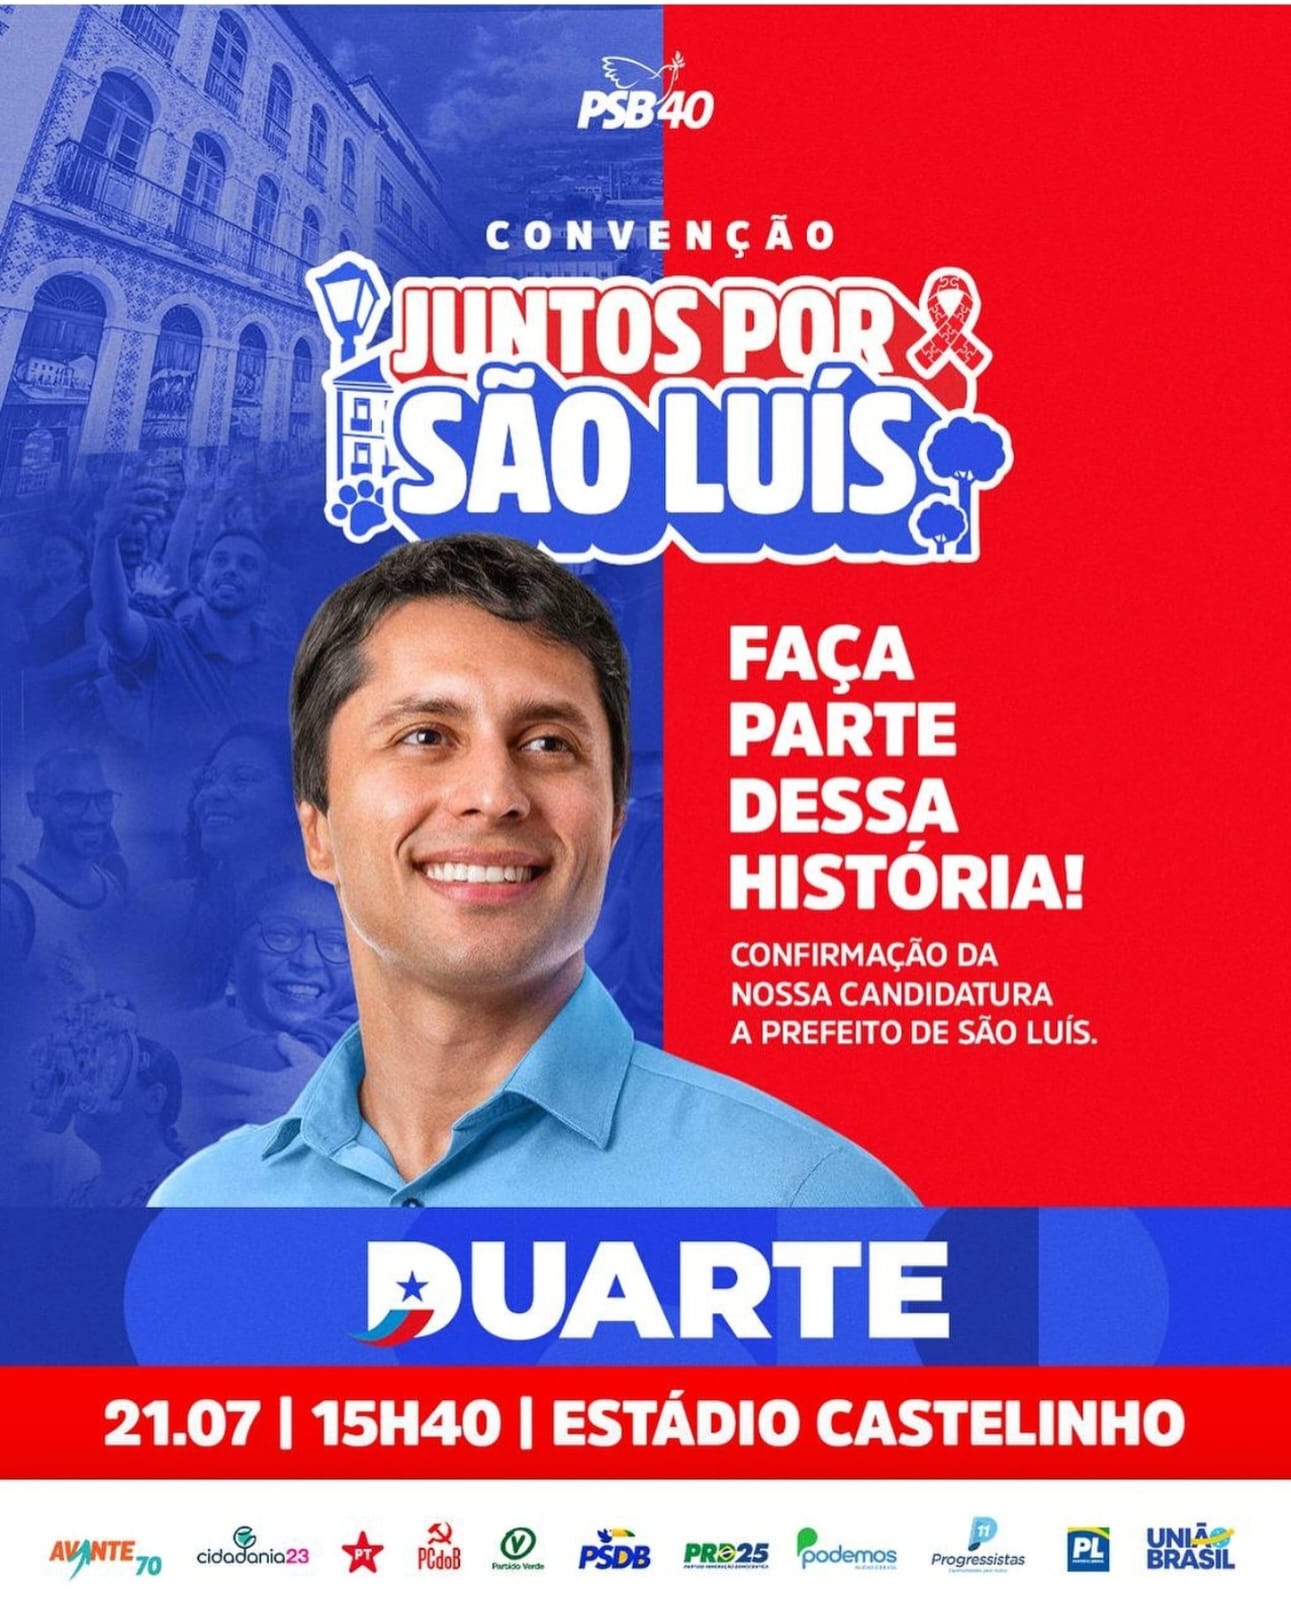 Duarte oficializa candidatura em grande evento no Castelinho com apoio de 12 partidos “Juntos por São Luís”